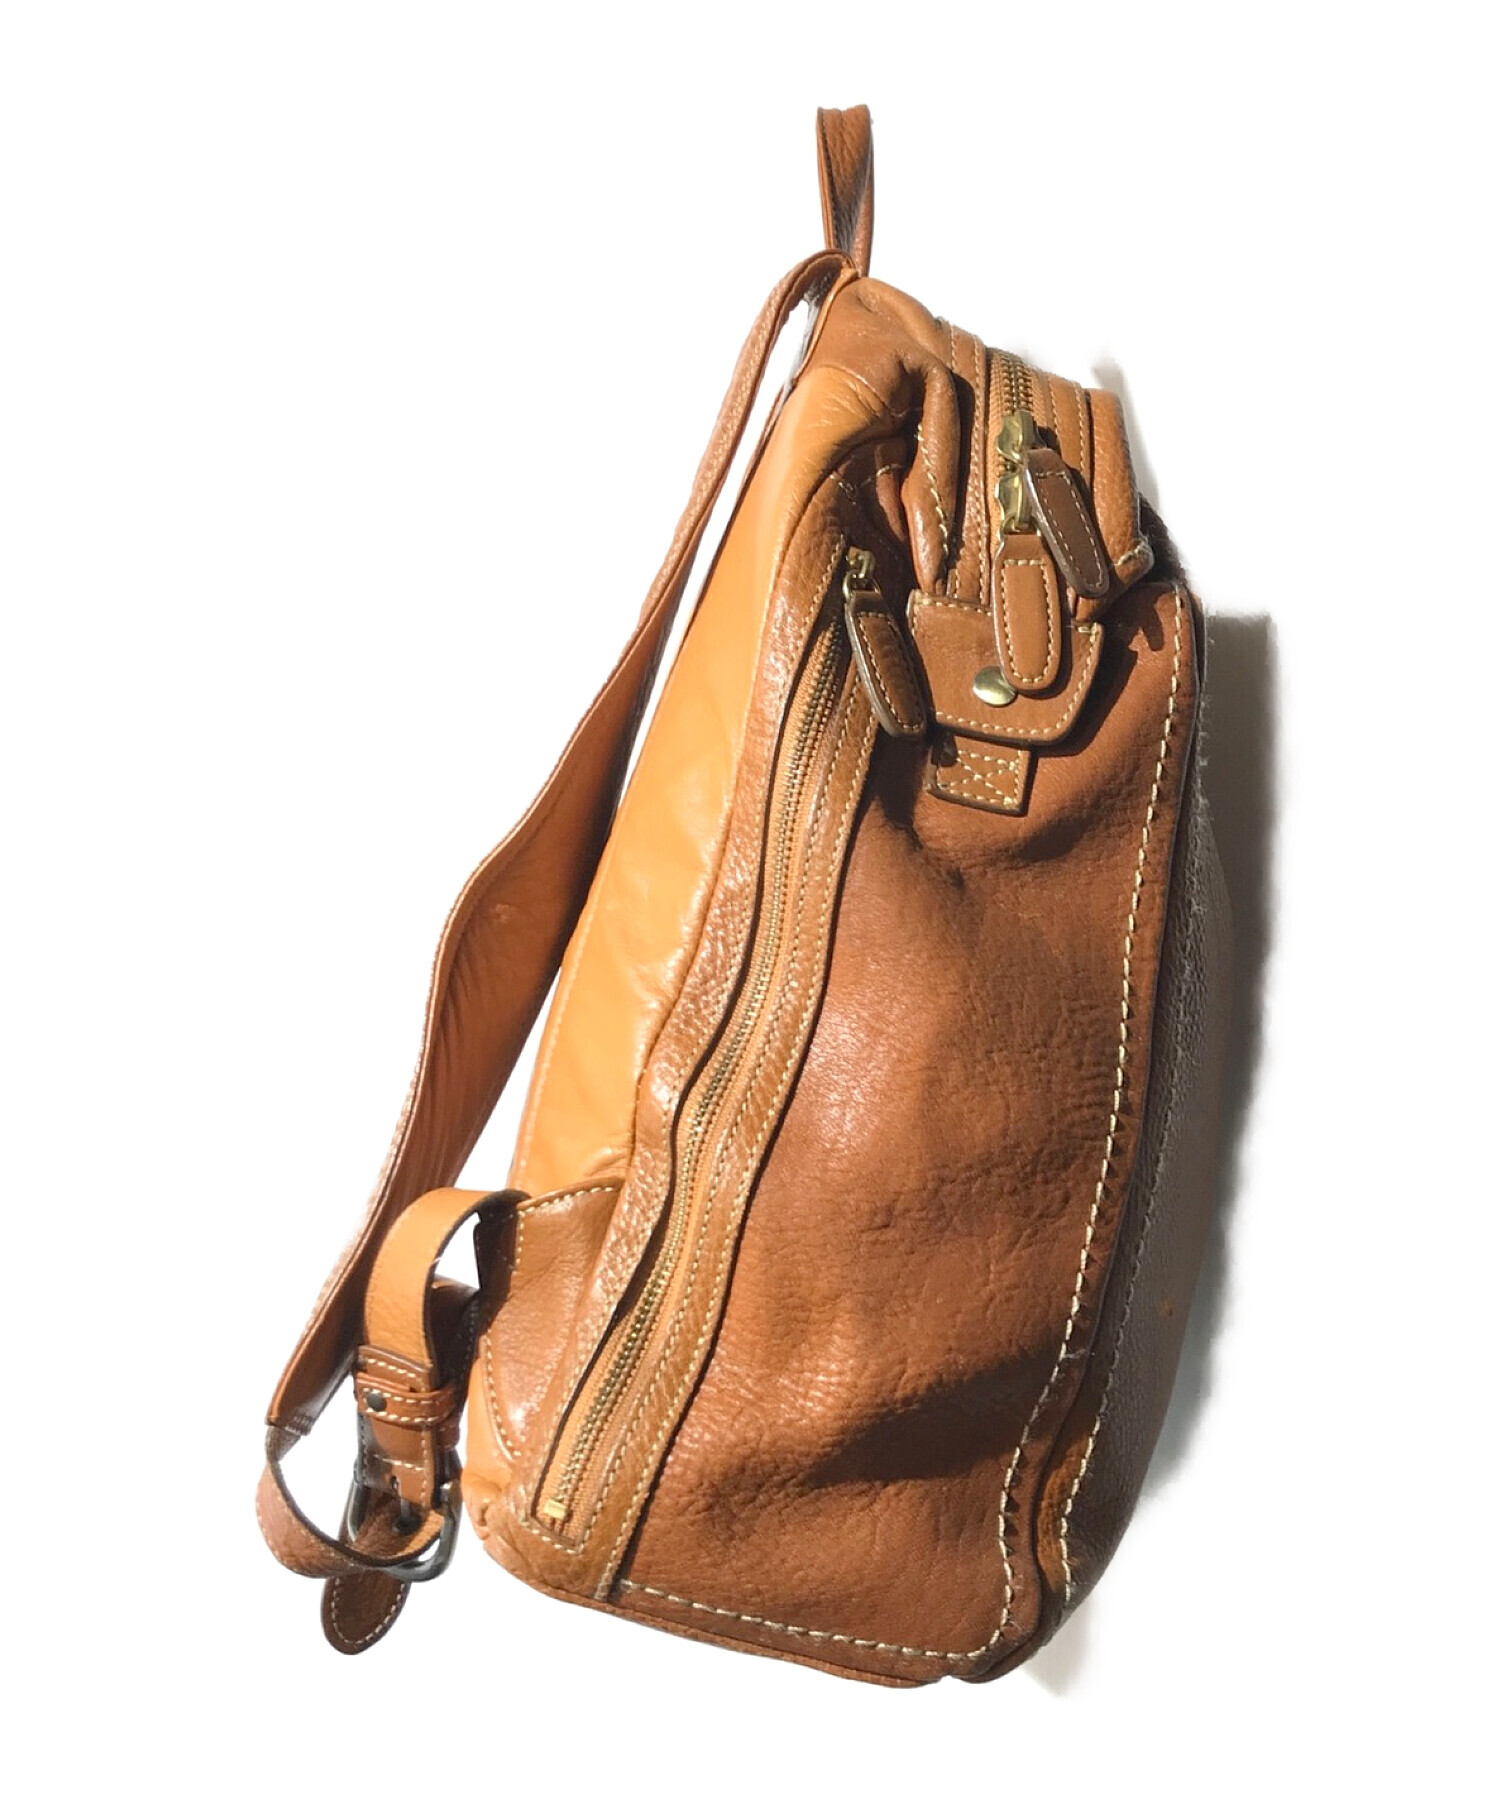 土屋鞄 (ツチヤカバン) トーンオイルヌメソフトミディアムバックパック